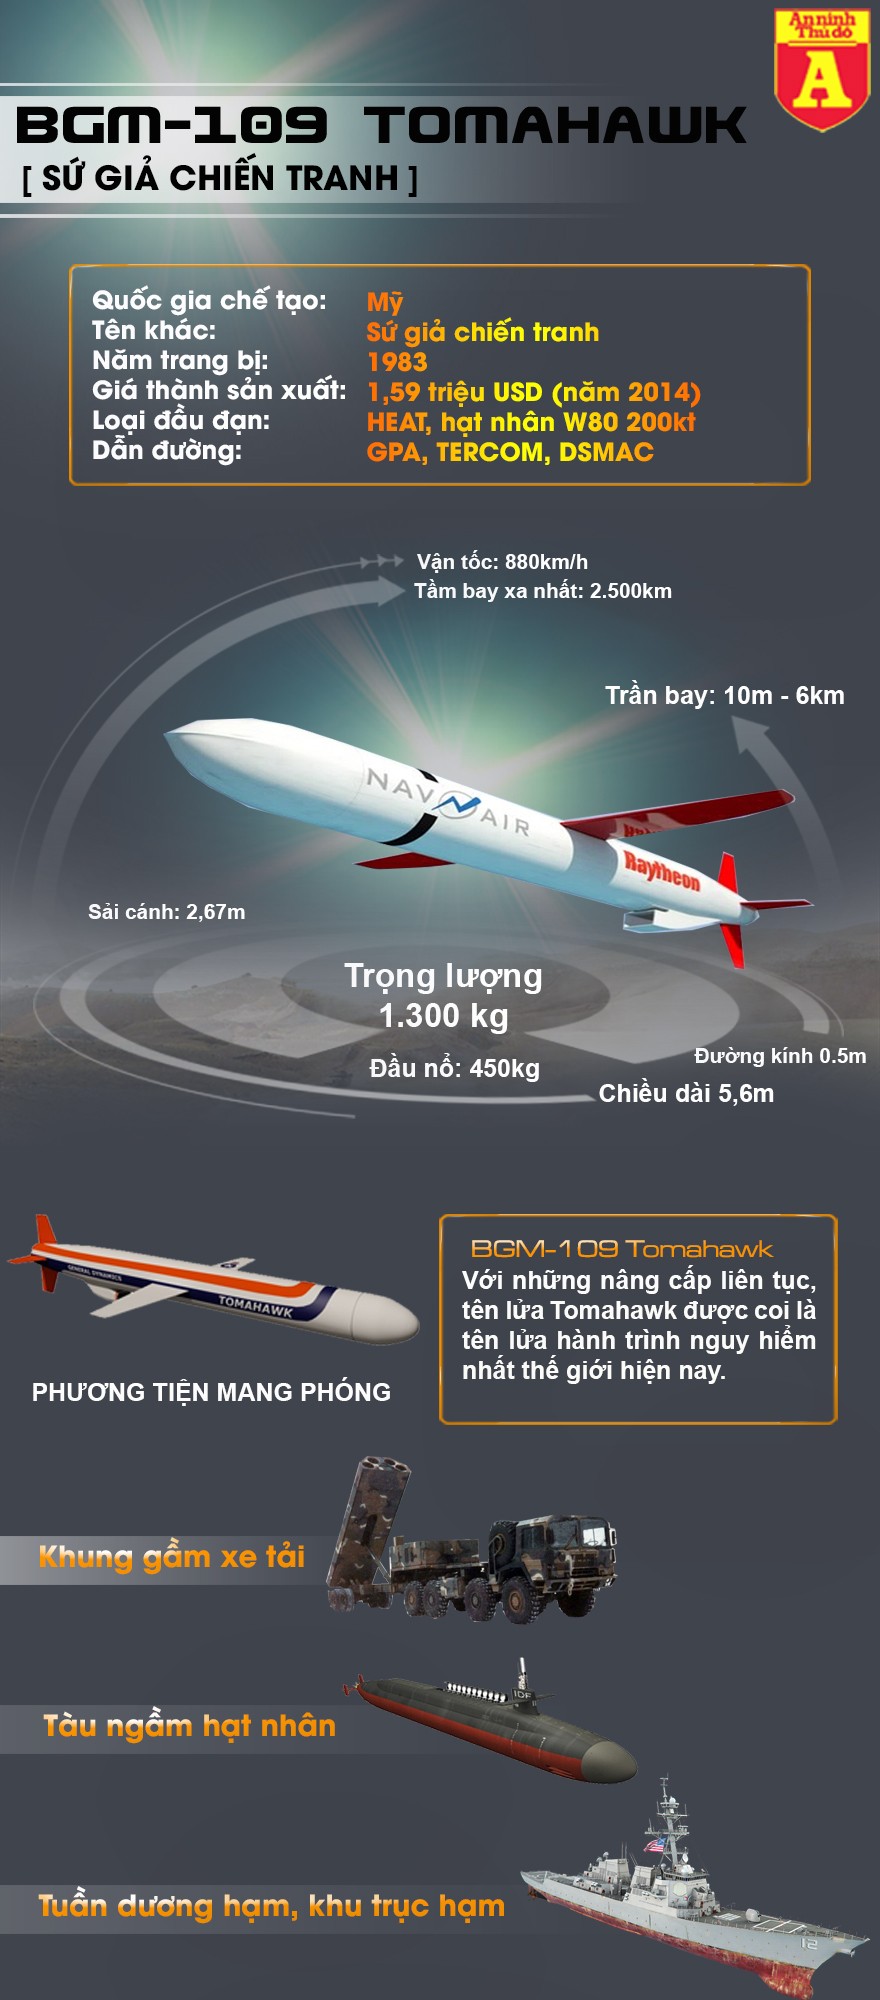 [Infographic] Khám phá tên lửa nổi danh Tomahawk trang bị trên tàu Mỹ ghé thăm Việt Nam ảnh 2